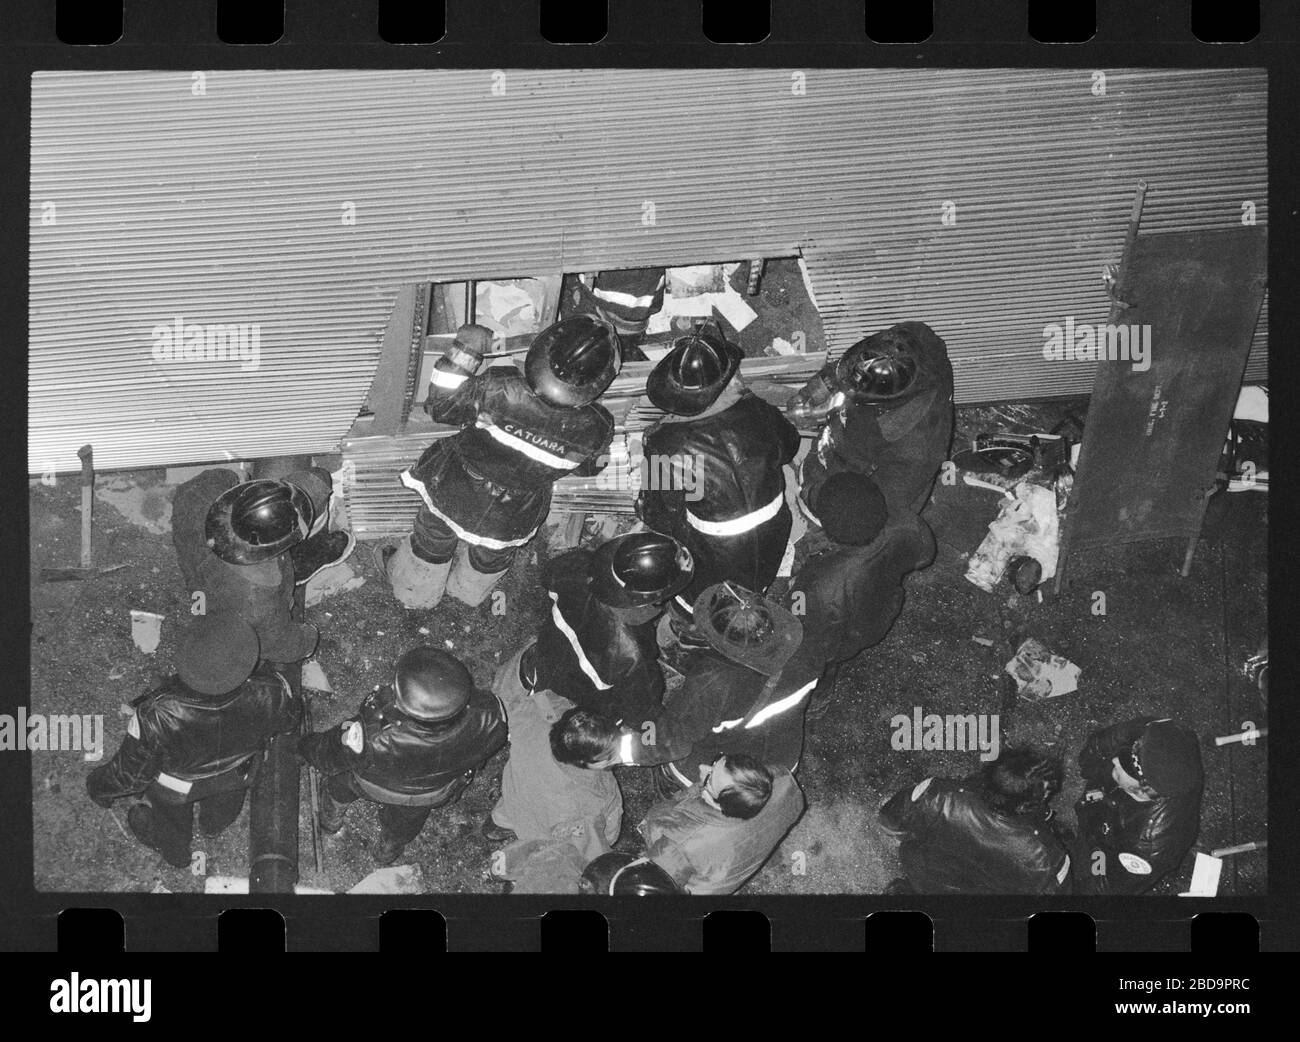 Erhöhte Entgleisungen des El-Zuges in Chicago, Illinois am Freitagabend, 4. Februar 1977. Zugwagen fallen wegen einer Kollision an der Kurvenkreuzung von Lake Street und Wabash Avenue auf die Straßenebene von Chicago Loop. Bild von 35 mm negativ. Stockfoto